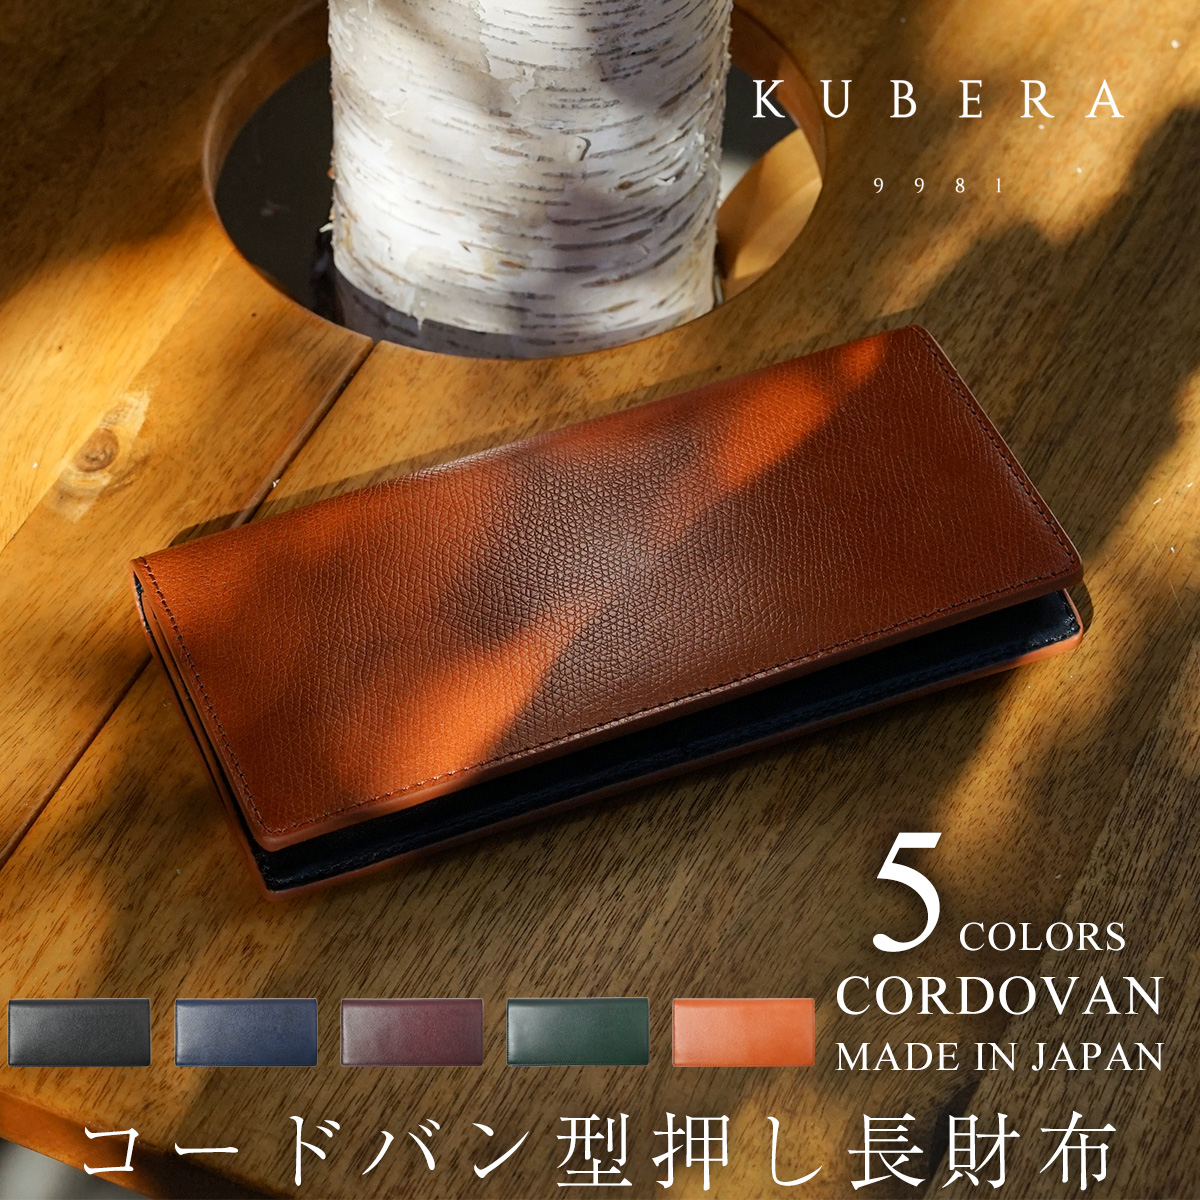 財布 メンズクベラ KUBERA9981 型押し コードバン 長財布 日本製 5